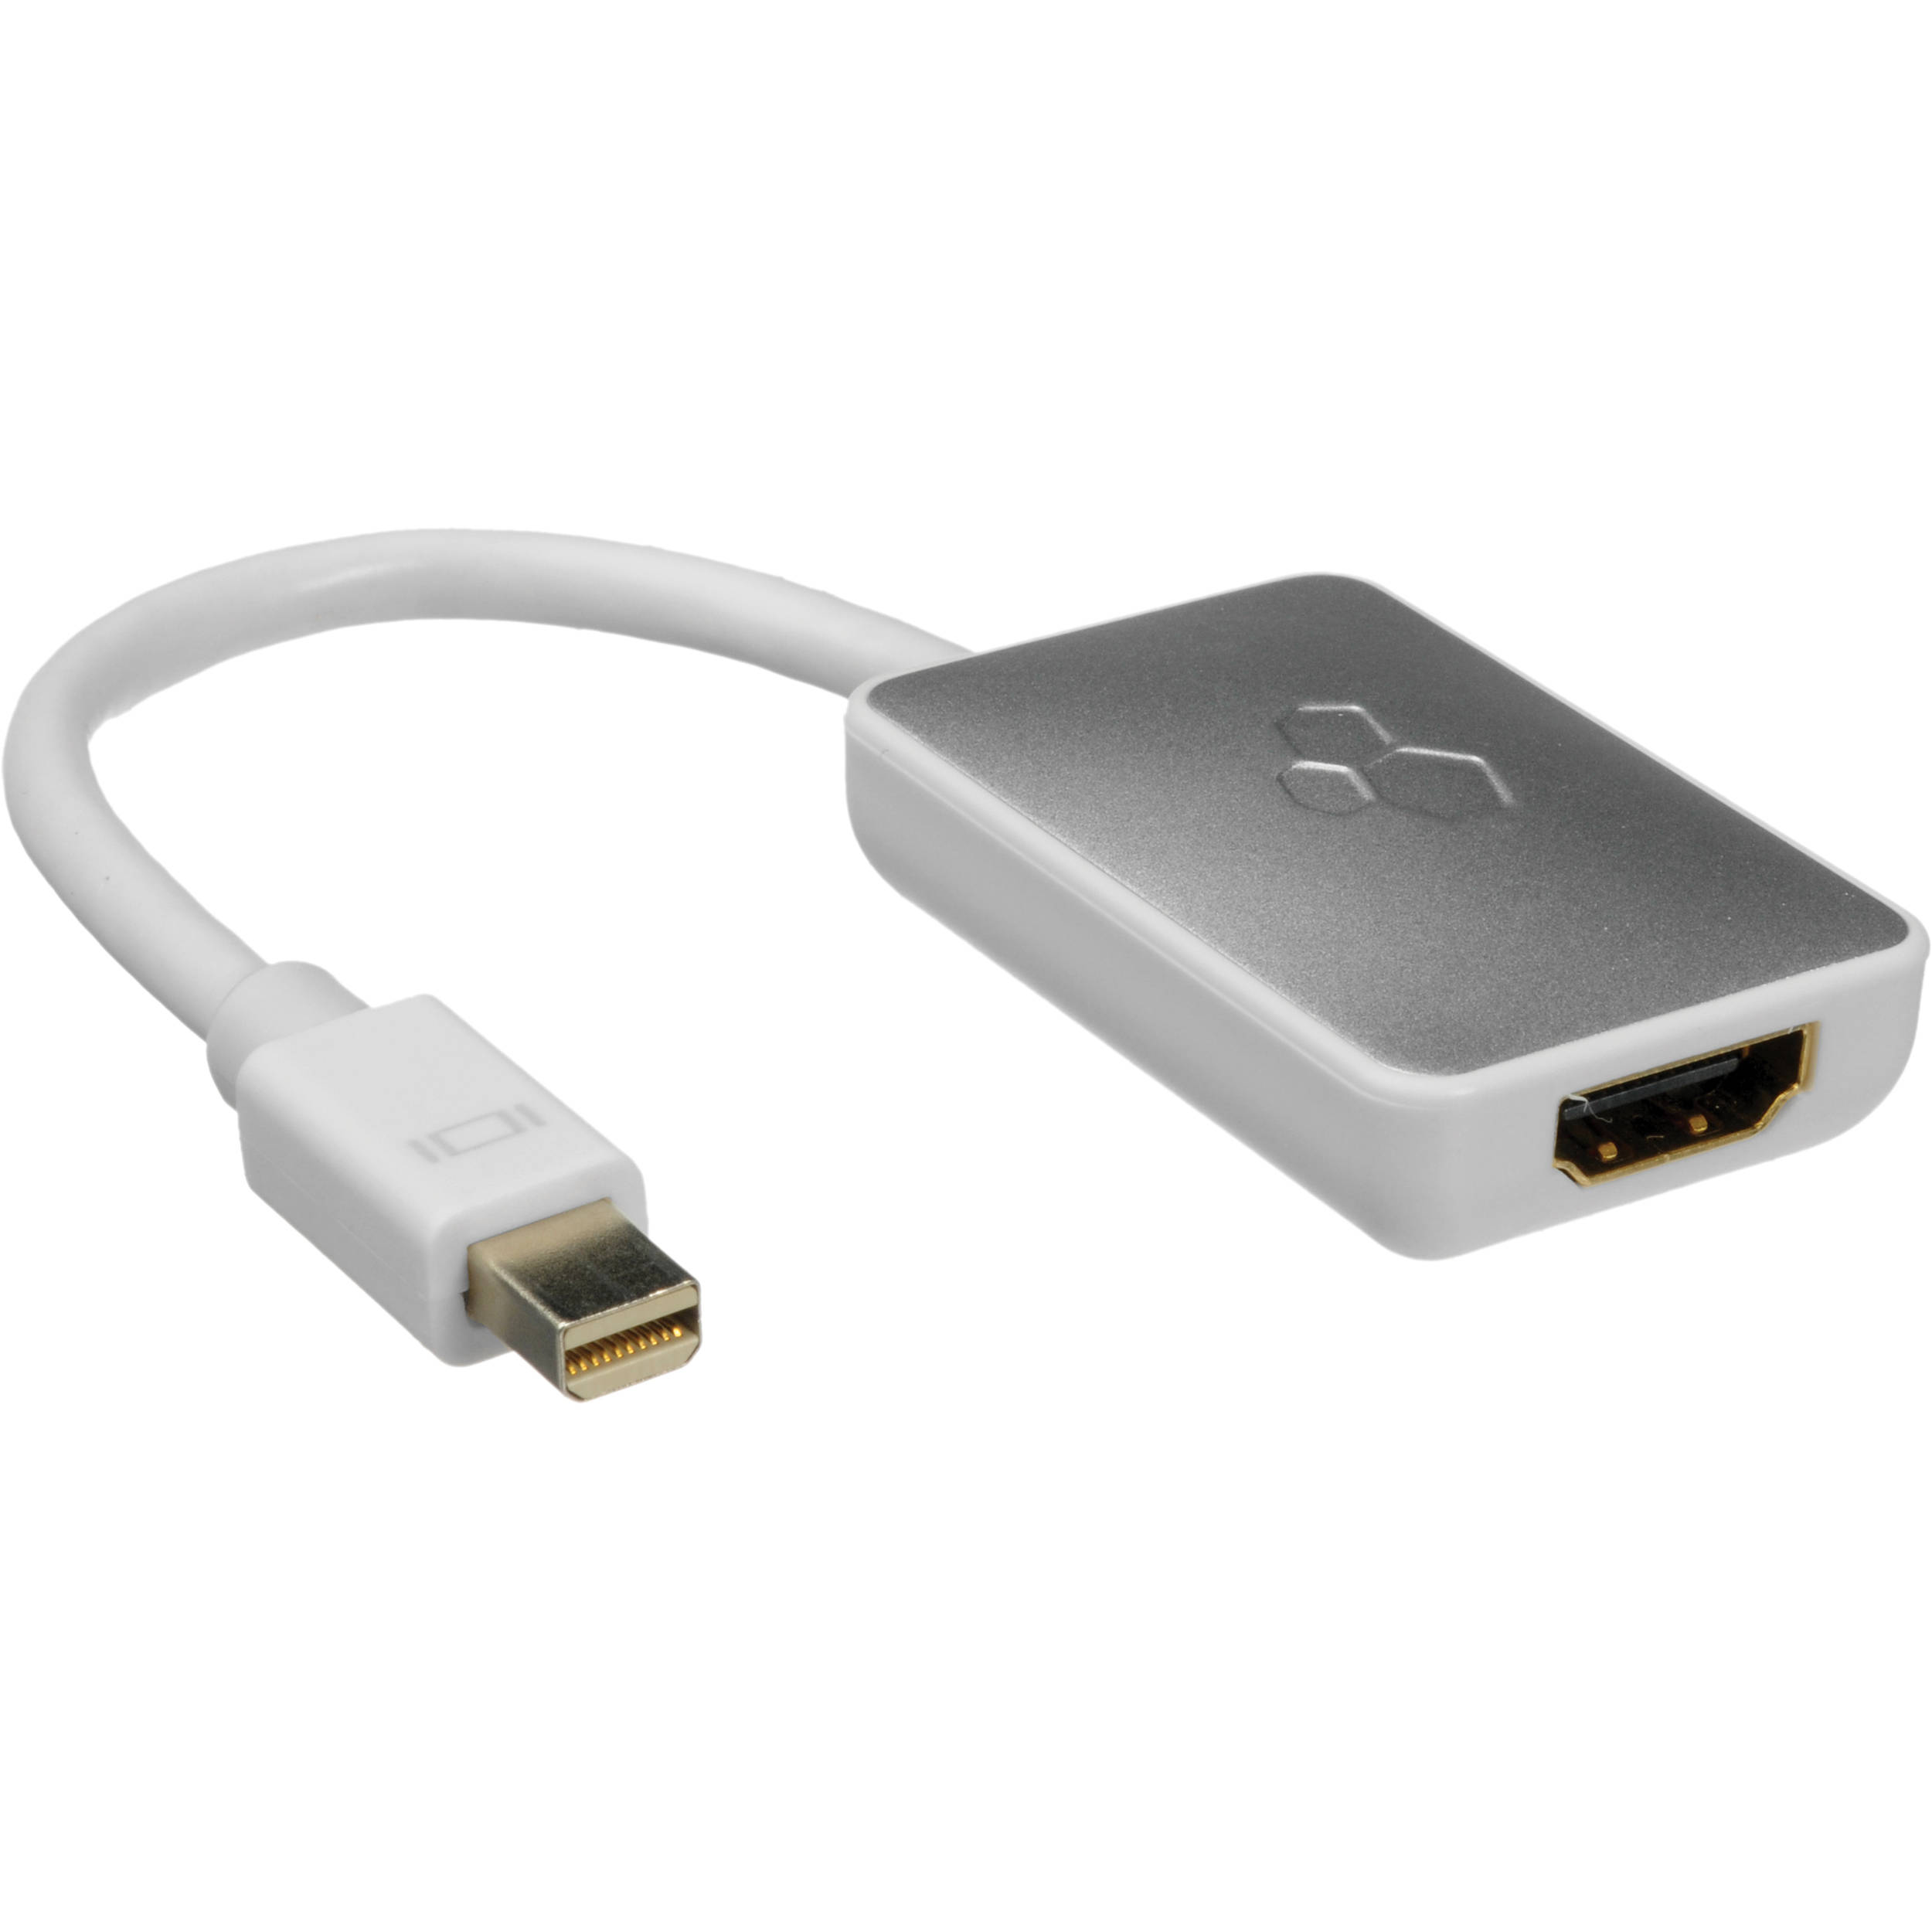 hdmi connector to macbook pro